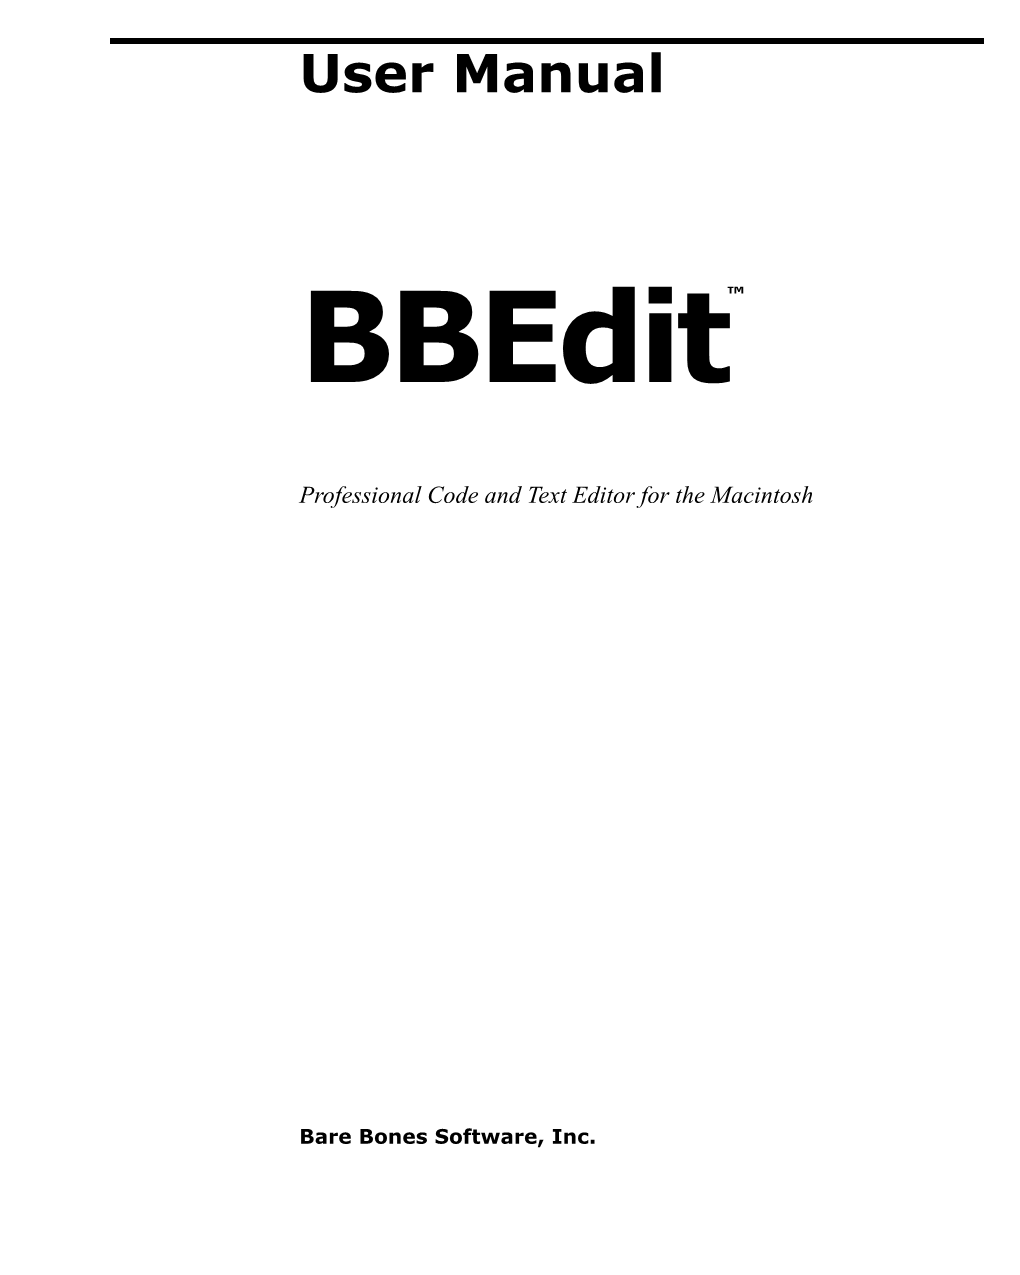 Bbedit 12.0 User Manual